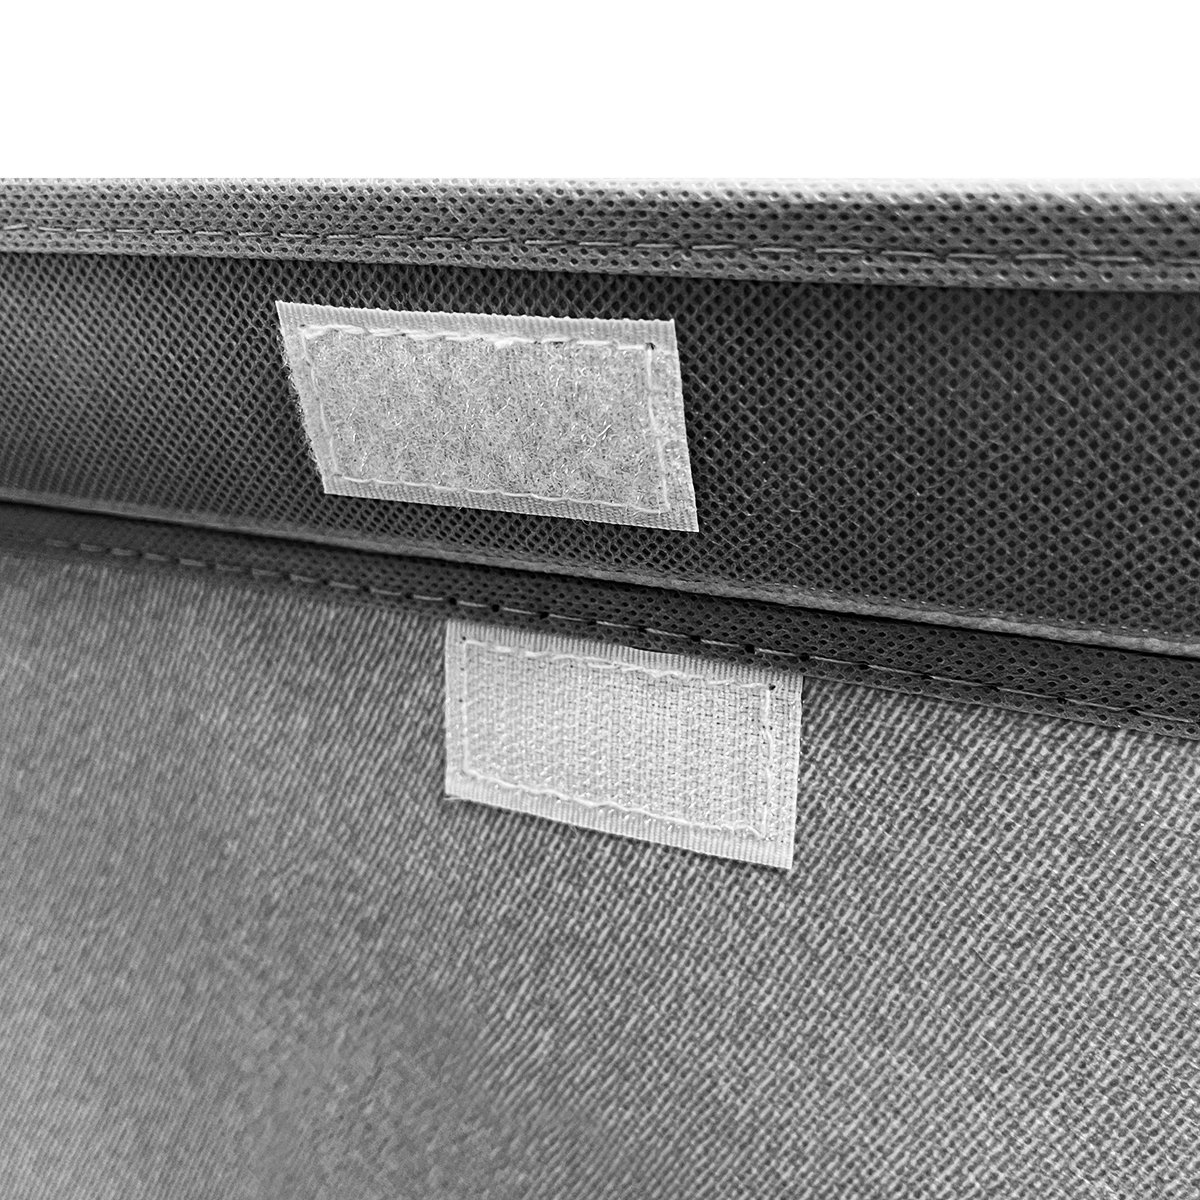 Ящик для хранения с крышкой МВМ My Home M текстильный, 380x250x250 мм, серый (TH-07 M GRAY) - фото 2